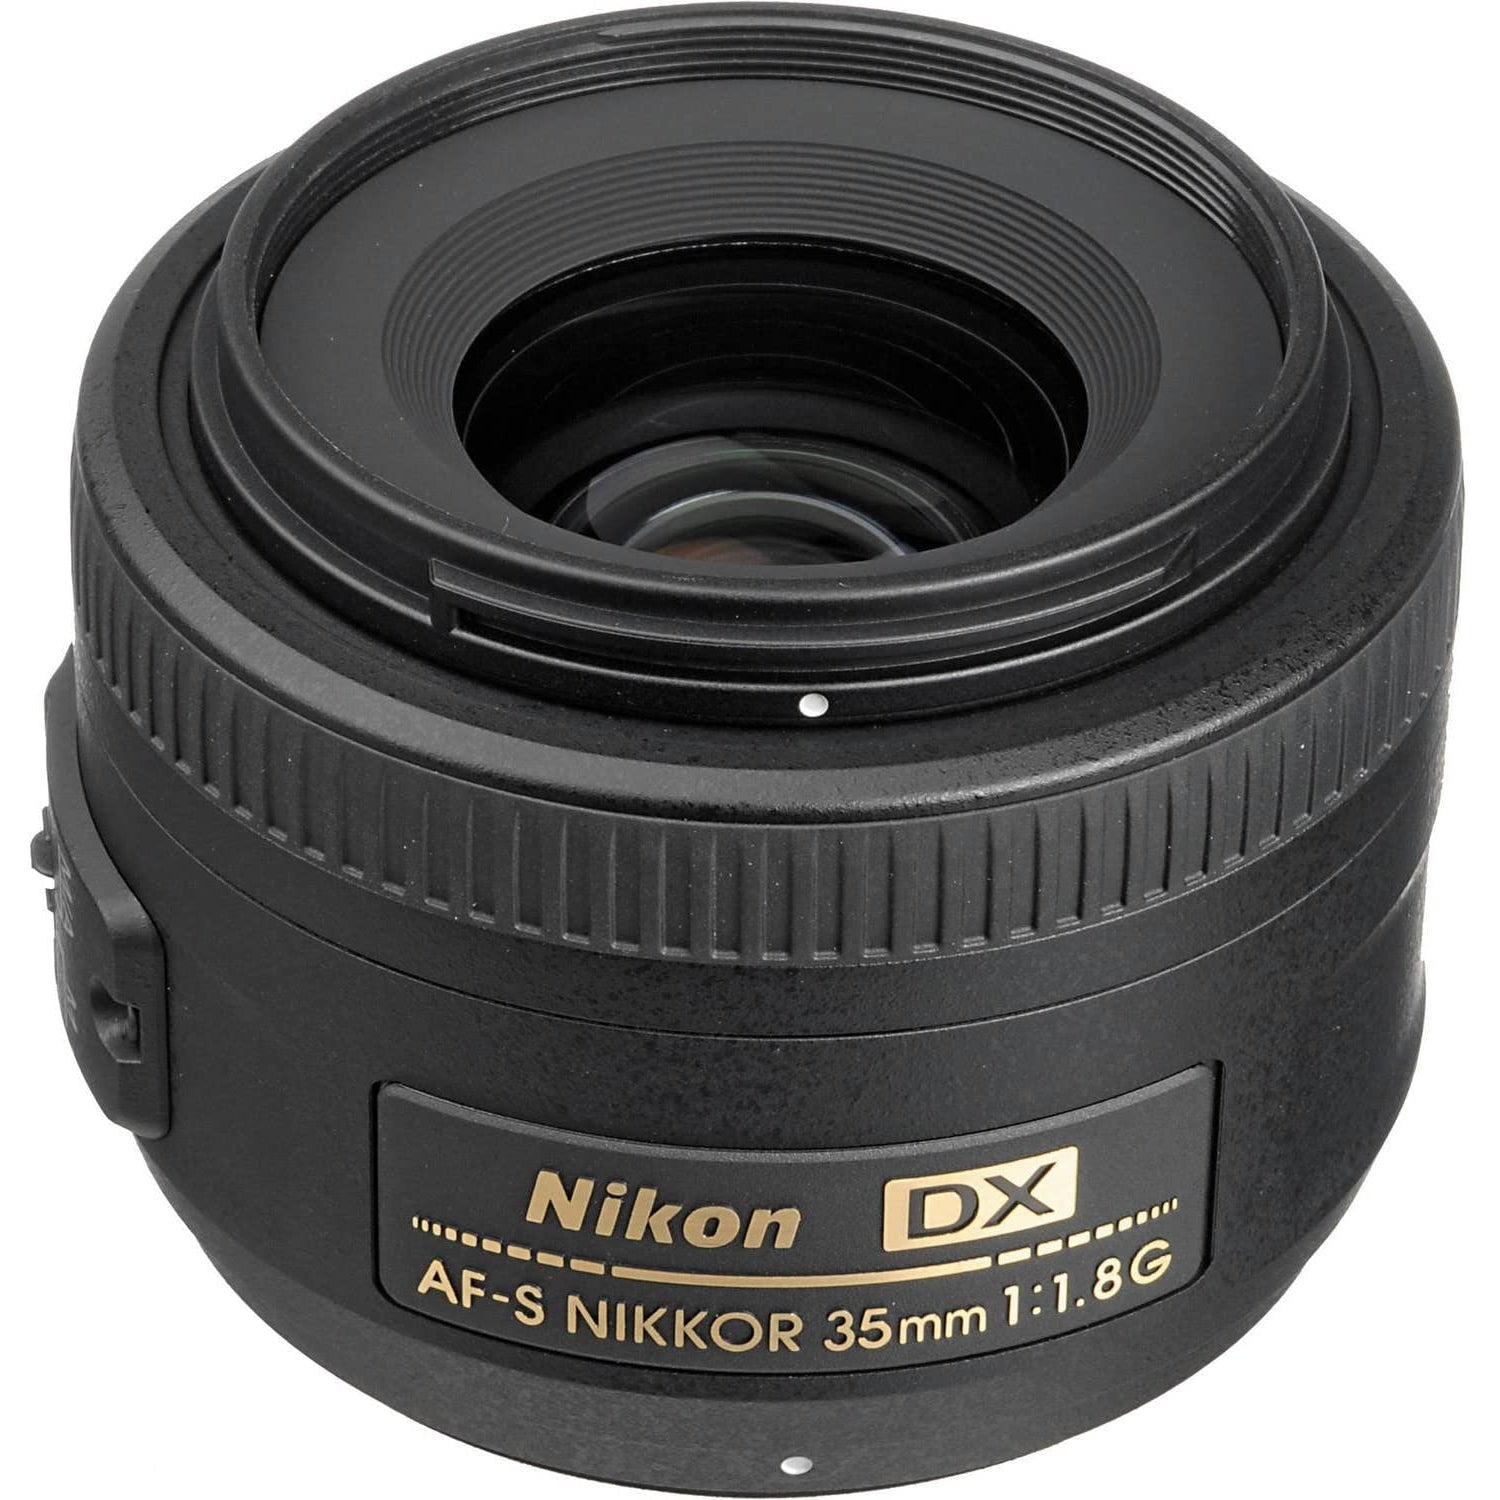 Nikon AF-S 35mm F1.8G DX Lens, Black